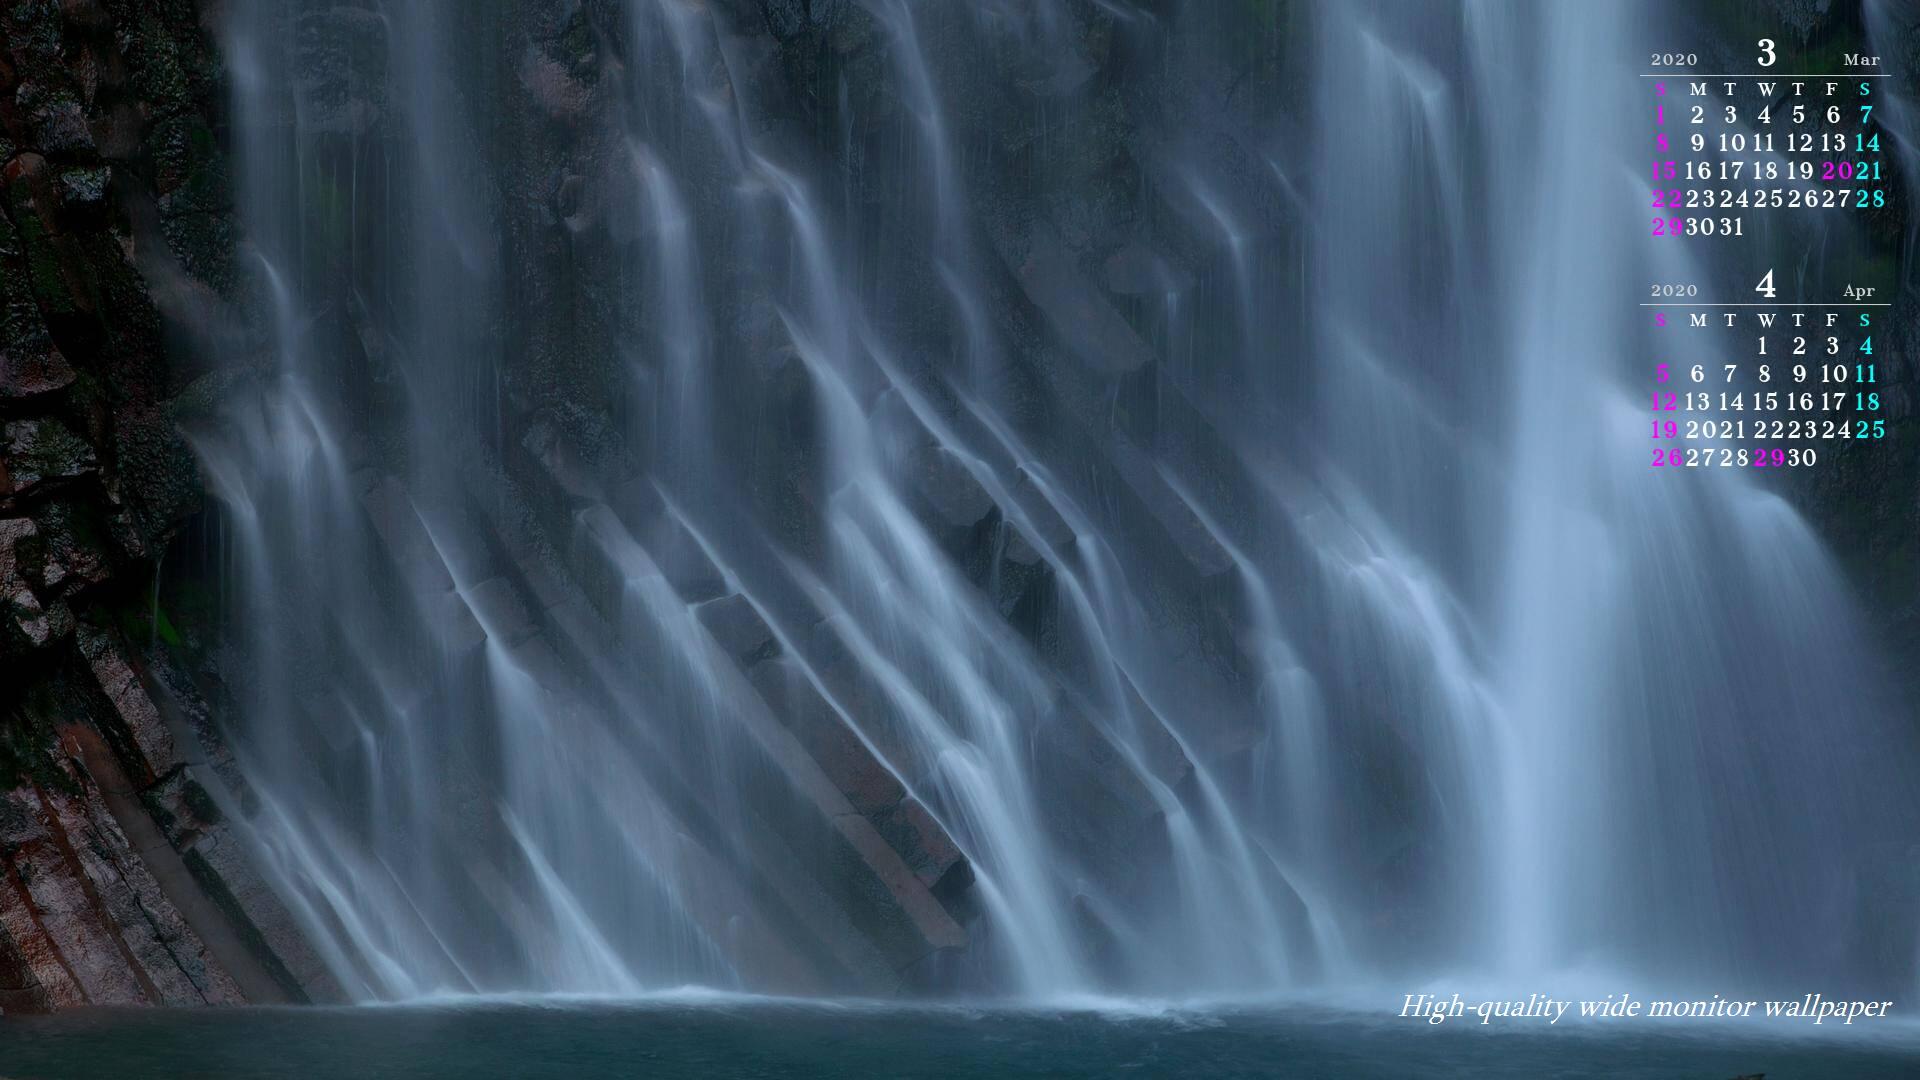 霧島温泉郷を流れる丸尾の滝をモチーフにしました2020年3月4月のカレンダー付きワイドモニター高画質壁紙【アスペクト比１６：９】に対応しています